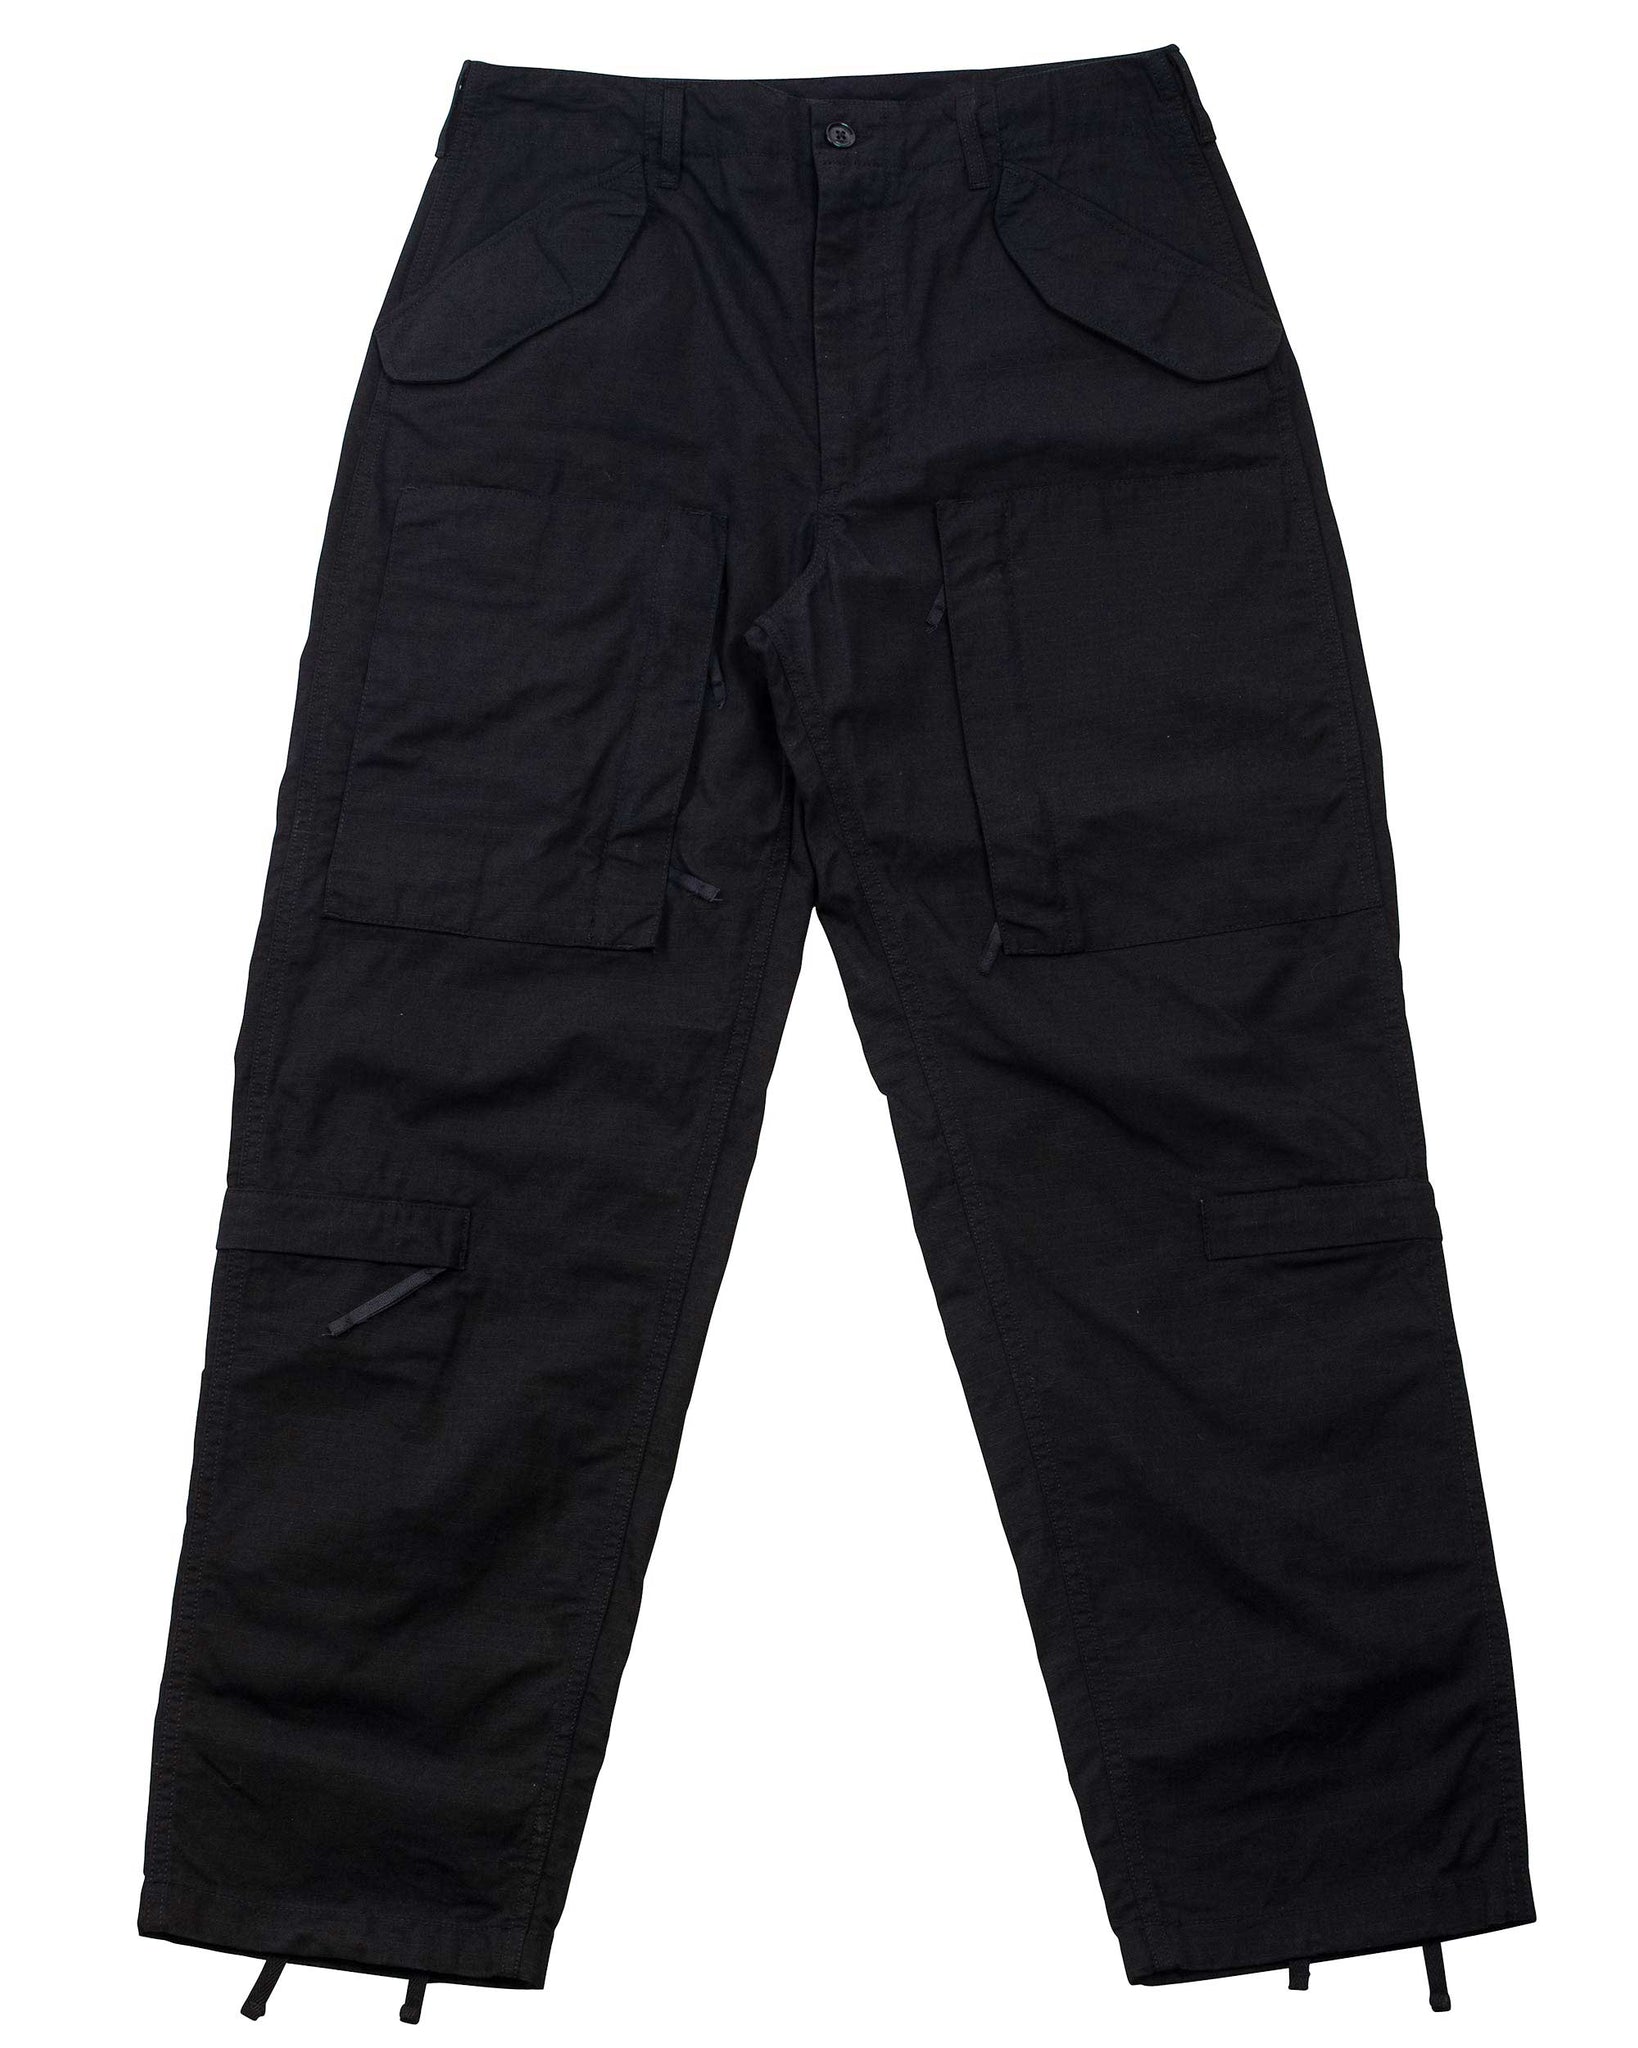 完売】 Engineered Garments black サイズ30 キルトパンツ パンツ 